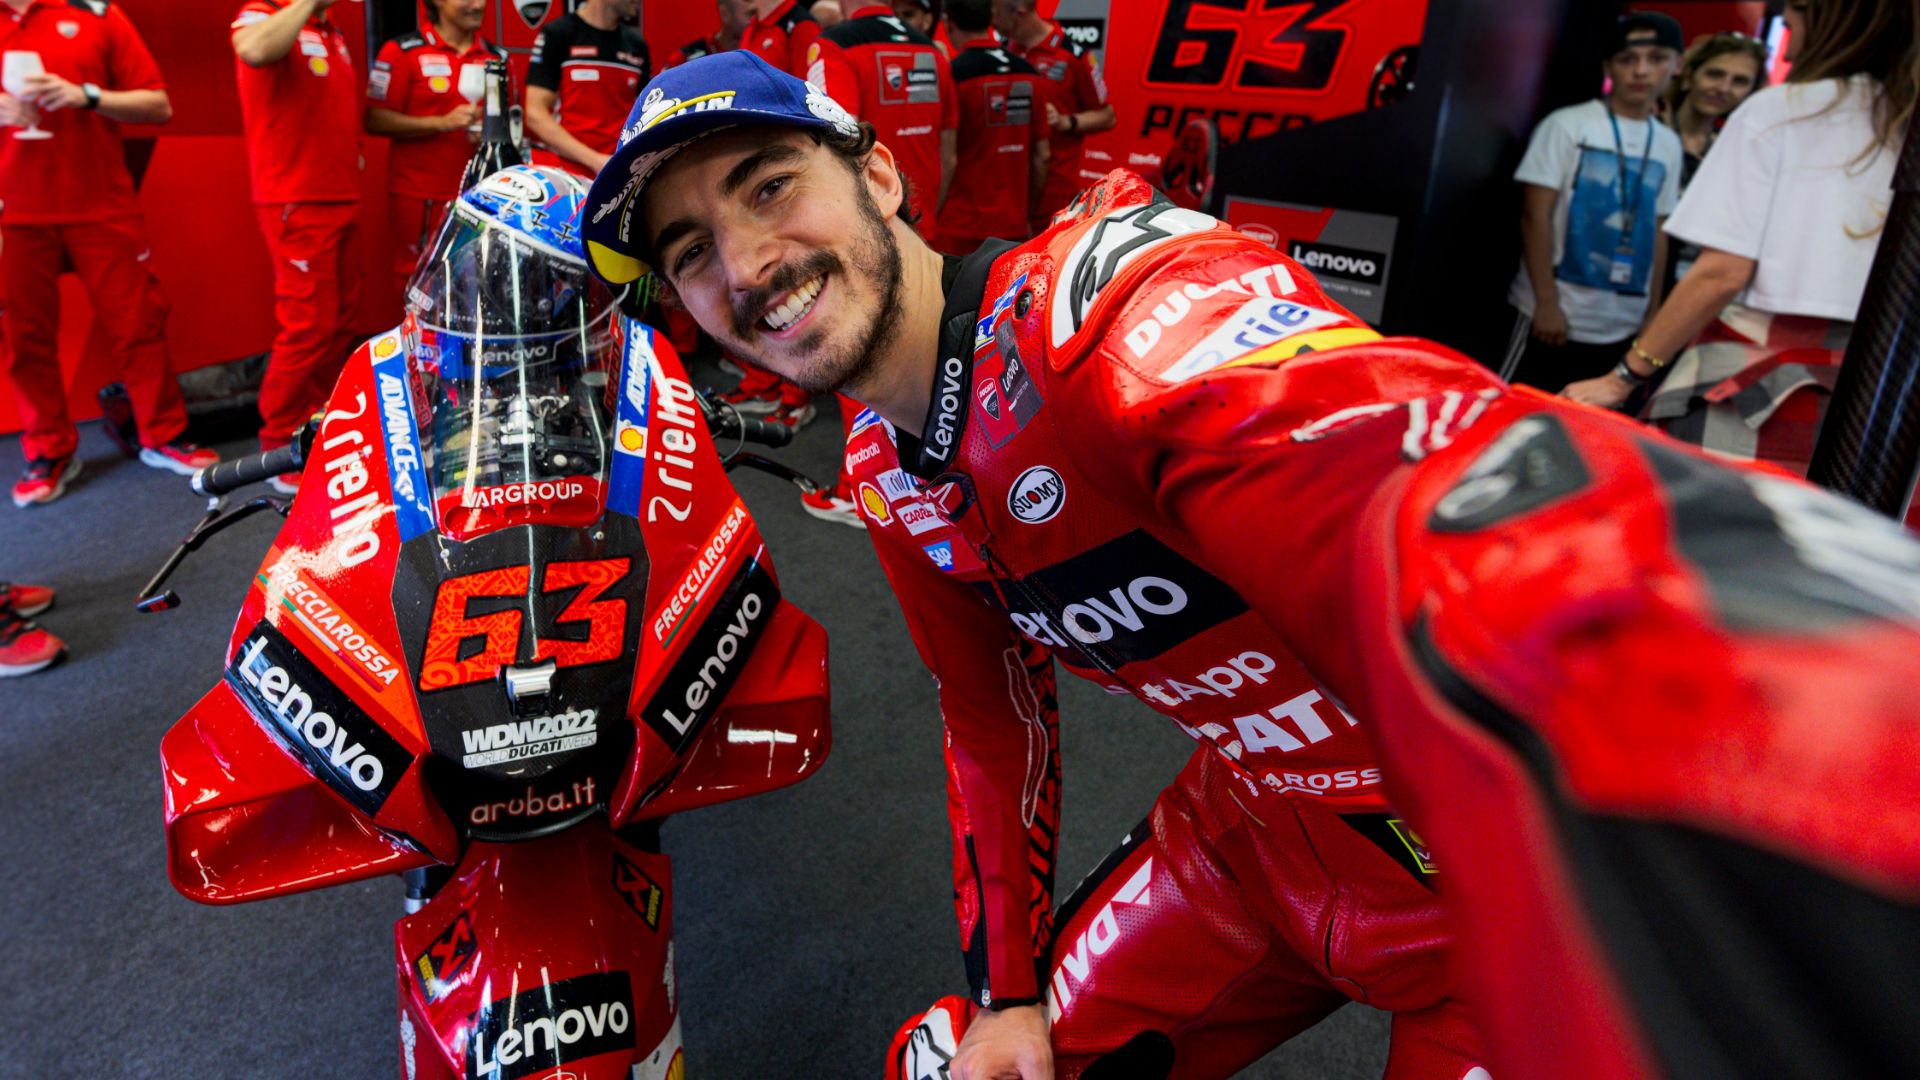 Italian GP: Pecco Bagnaia and Ducati triumph in their home Grand Prix at Mugello